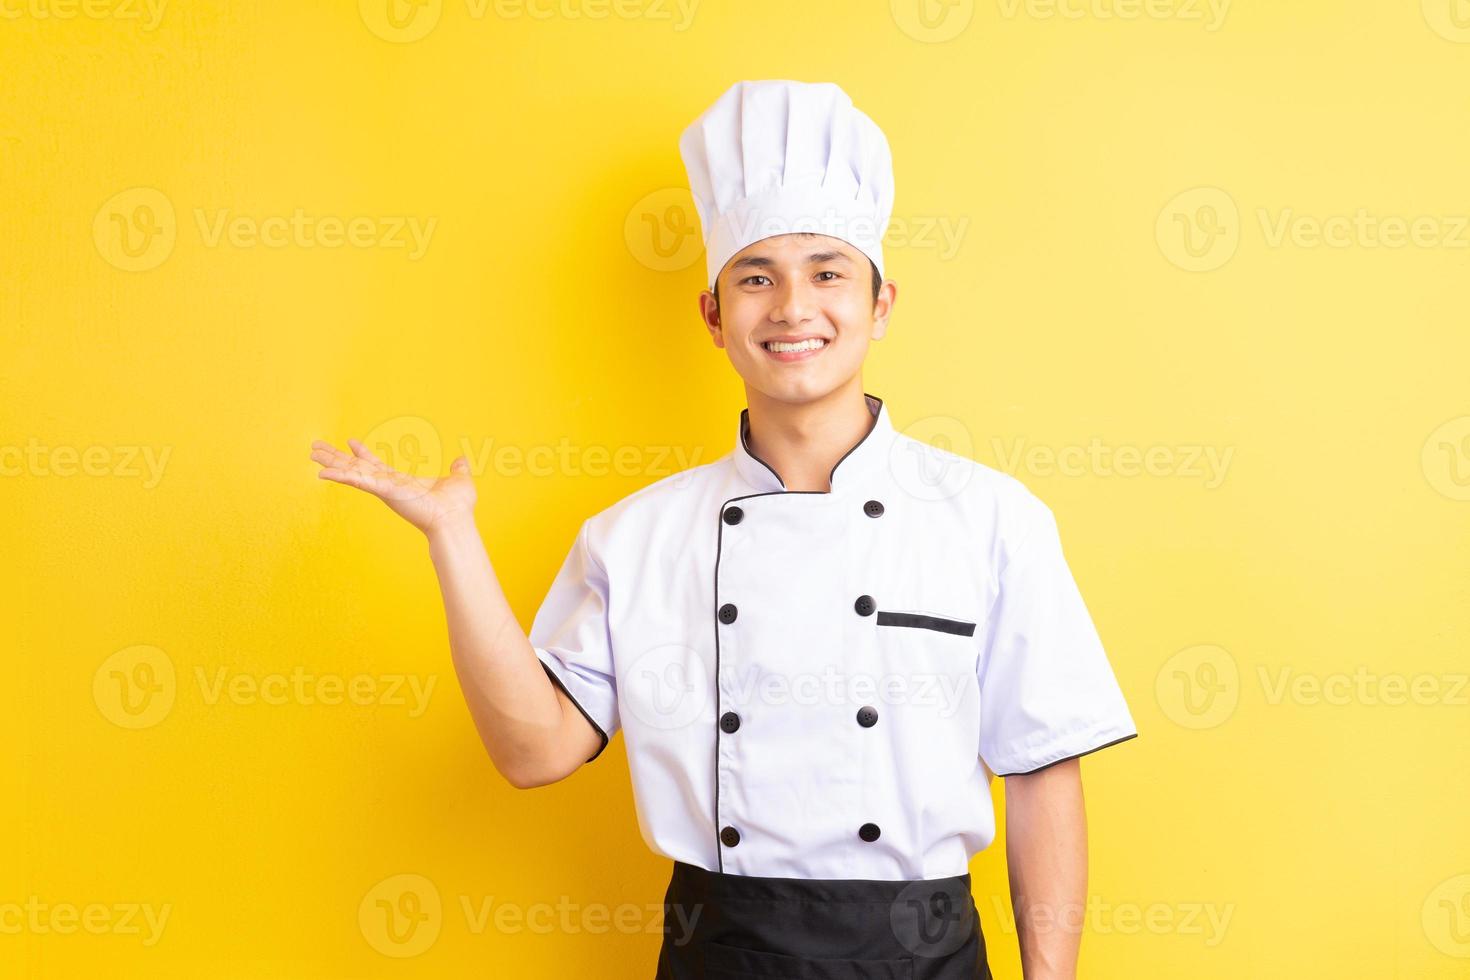 Imagen del chef asiático masculino sobre fondo amarillo foto